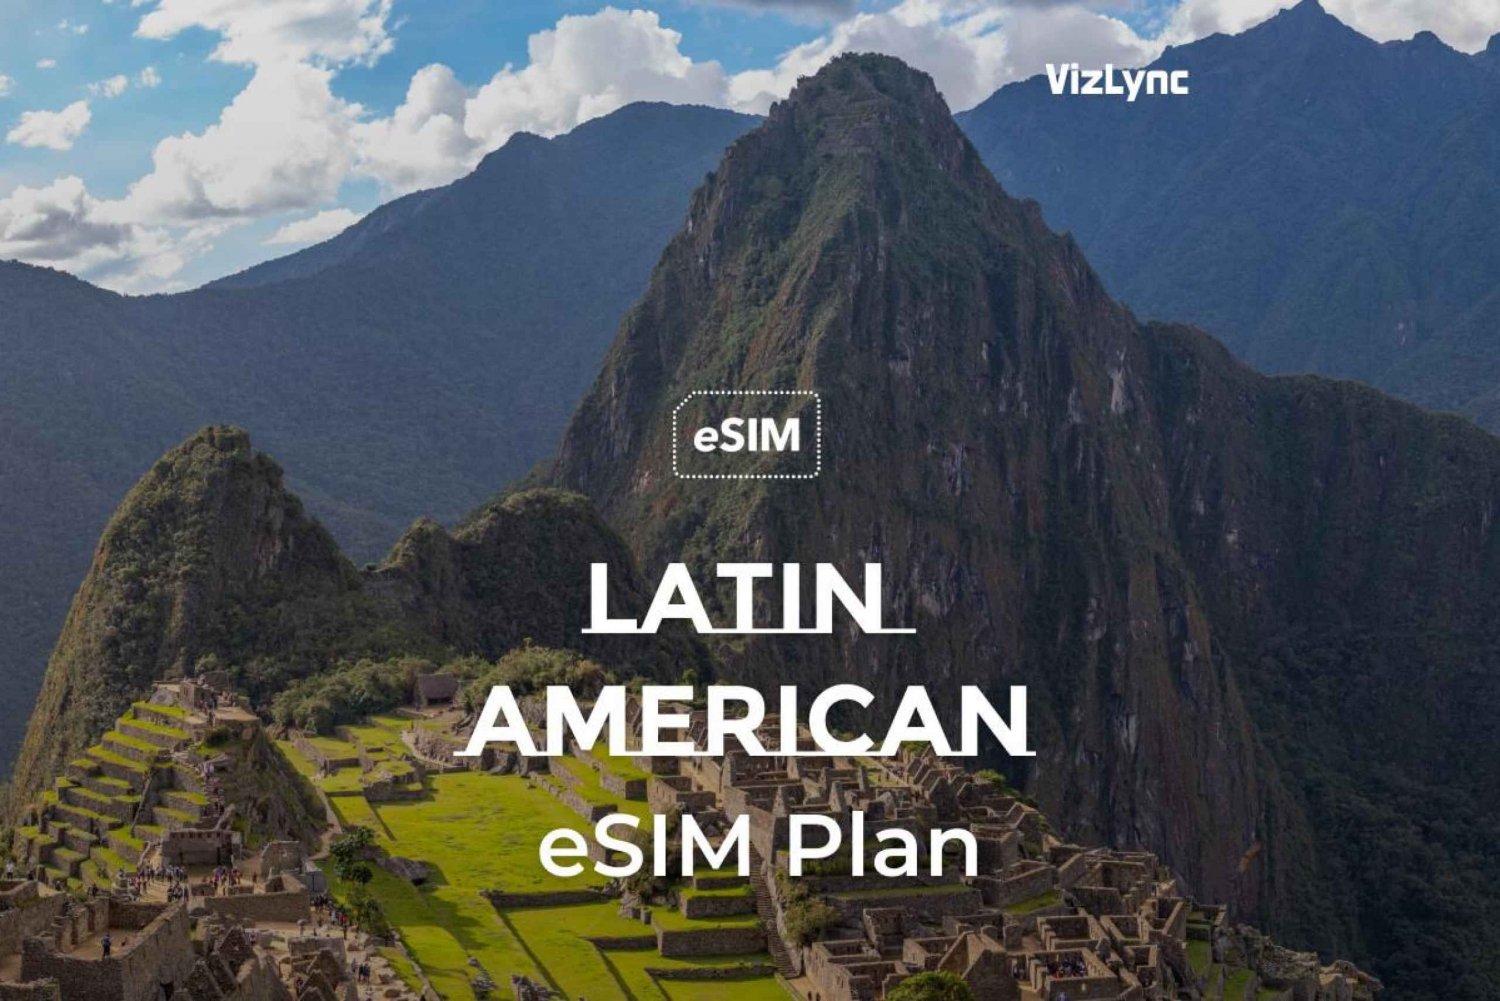 Hold forbindelsen i hele Latinamerika med vores data-only eSIMs